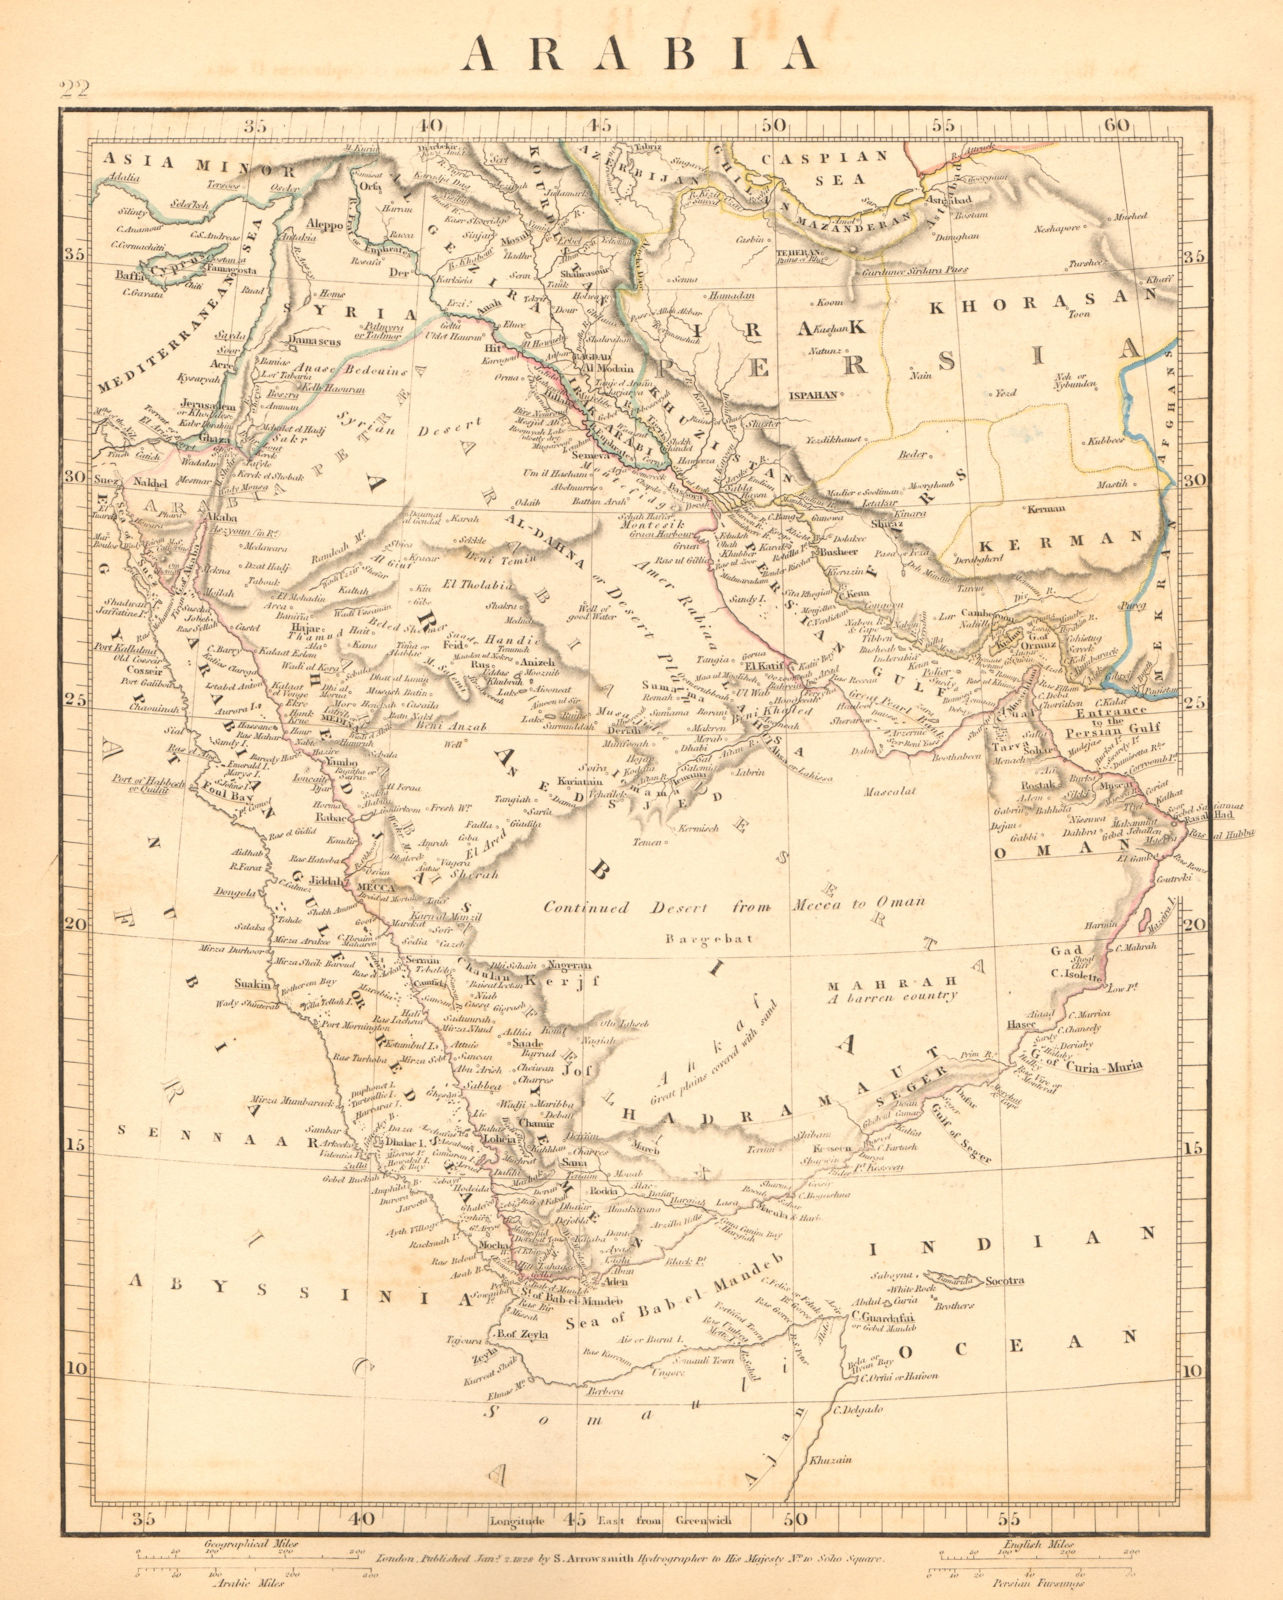 ARABIA. Early map showing "Debay" (Dubai). Graen/Kuwait. Muscat. ARROWSMITH 1828